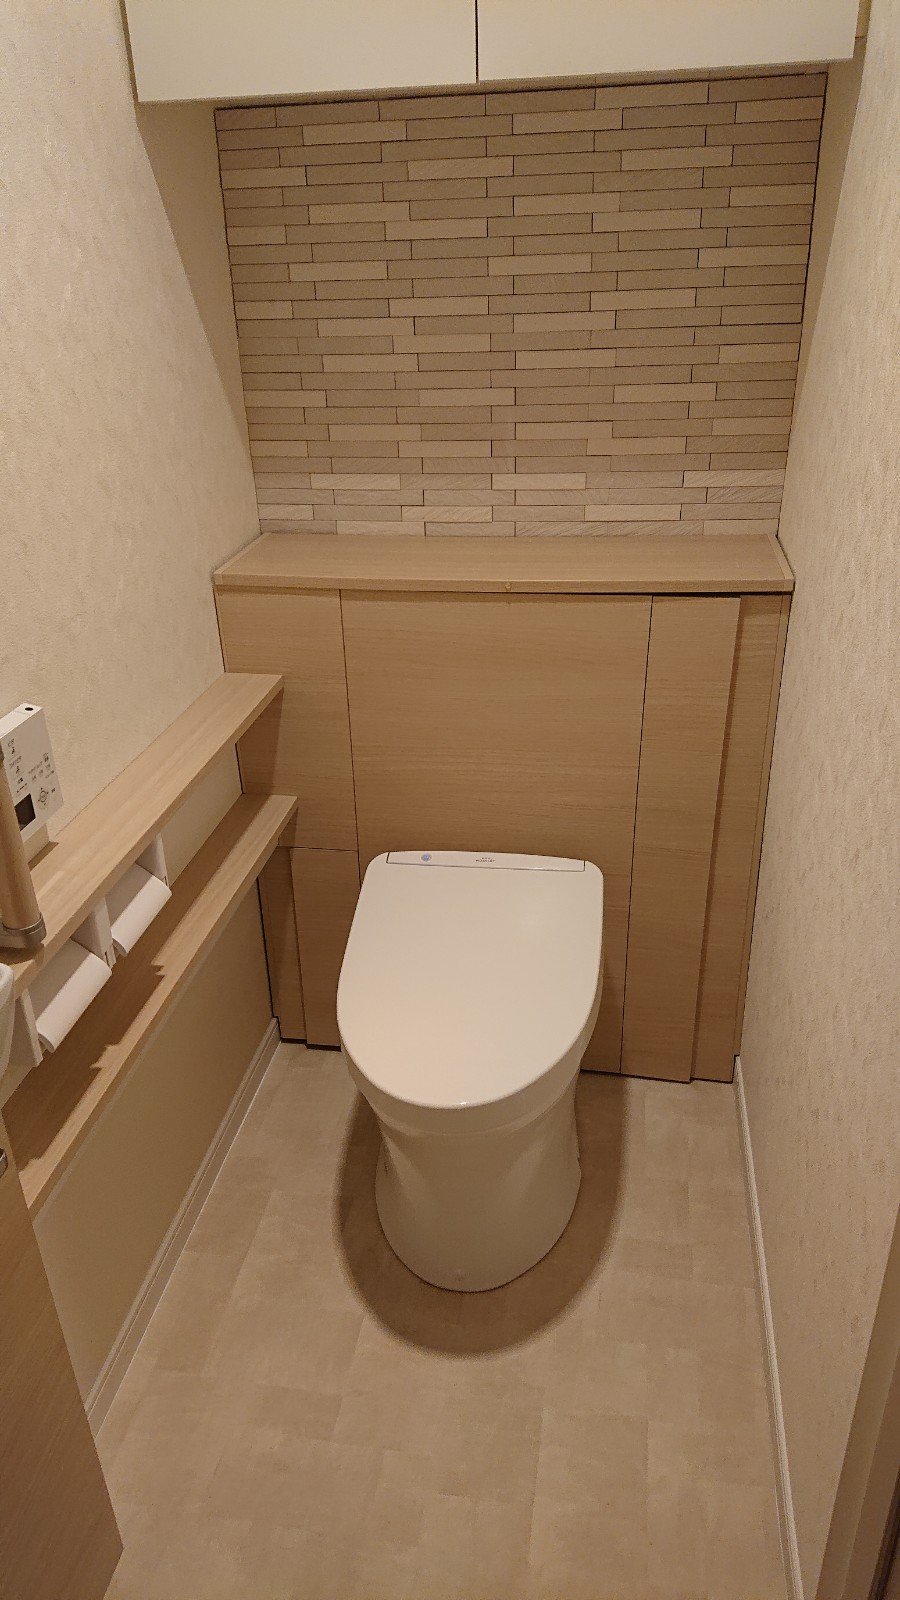 住宅用システムトイレによる手洗器位置の移動